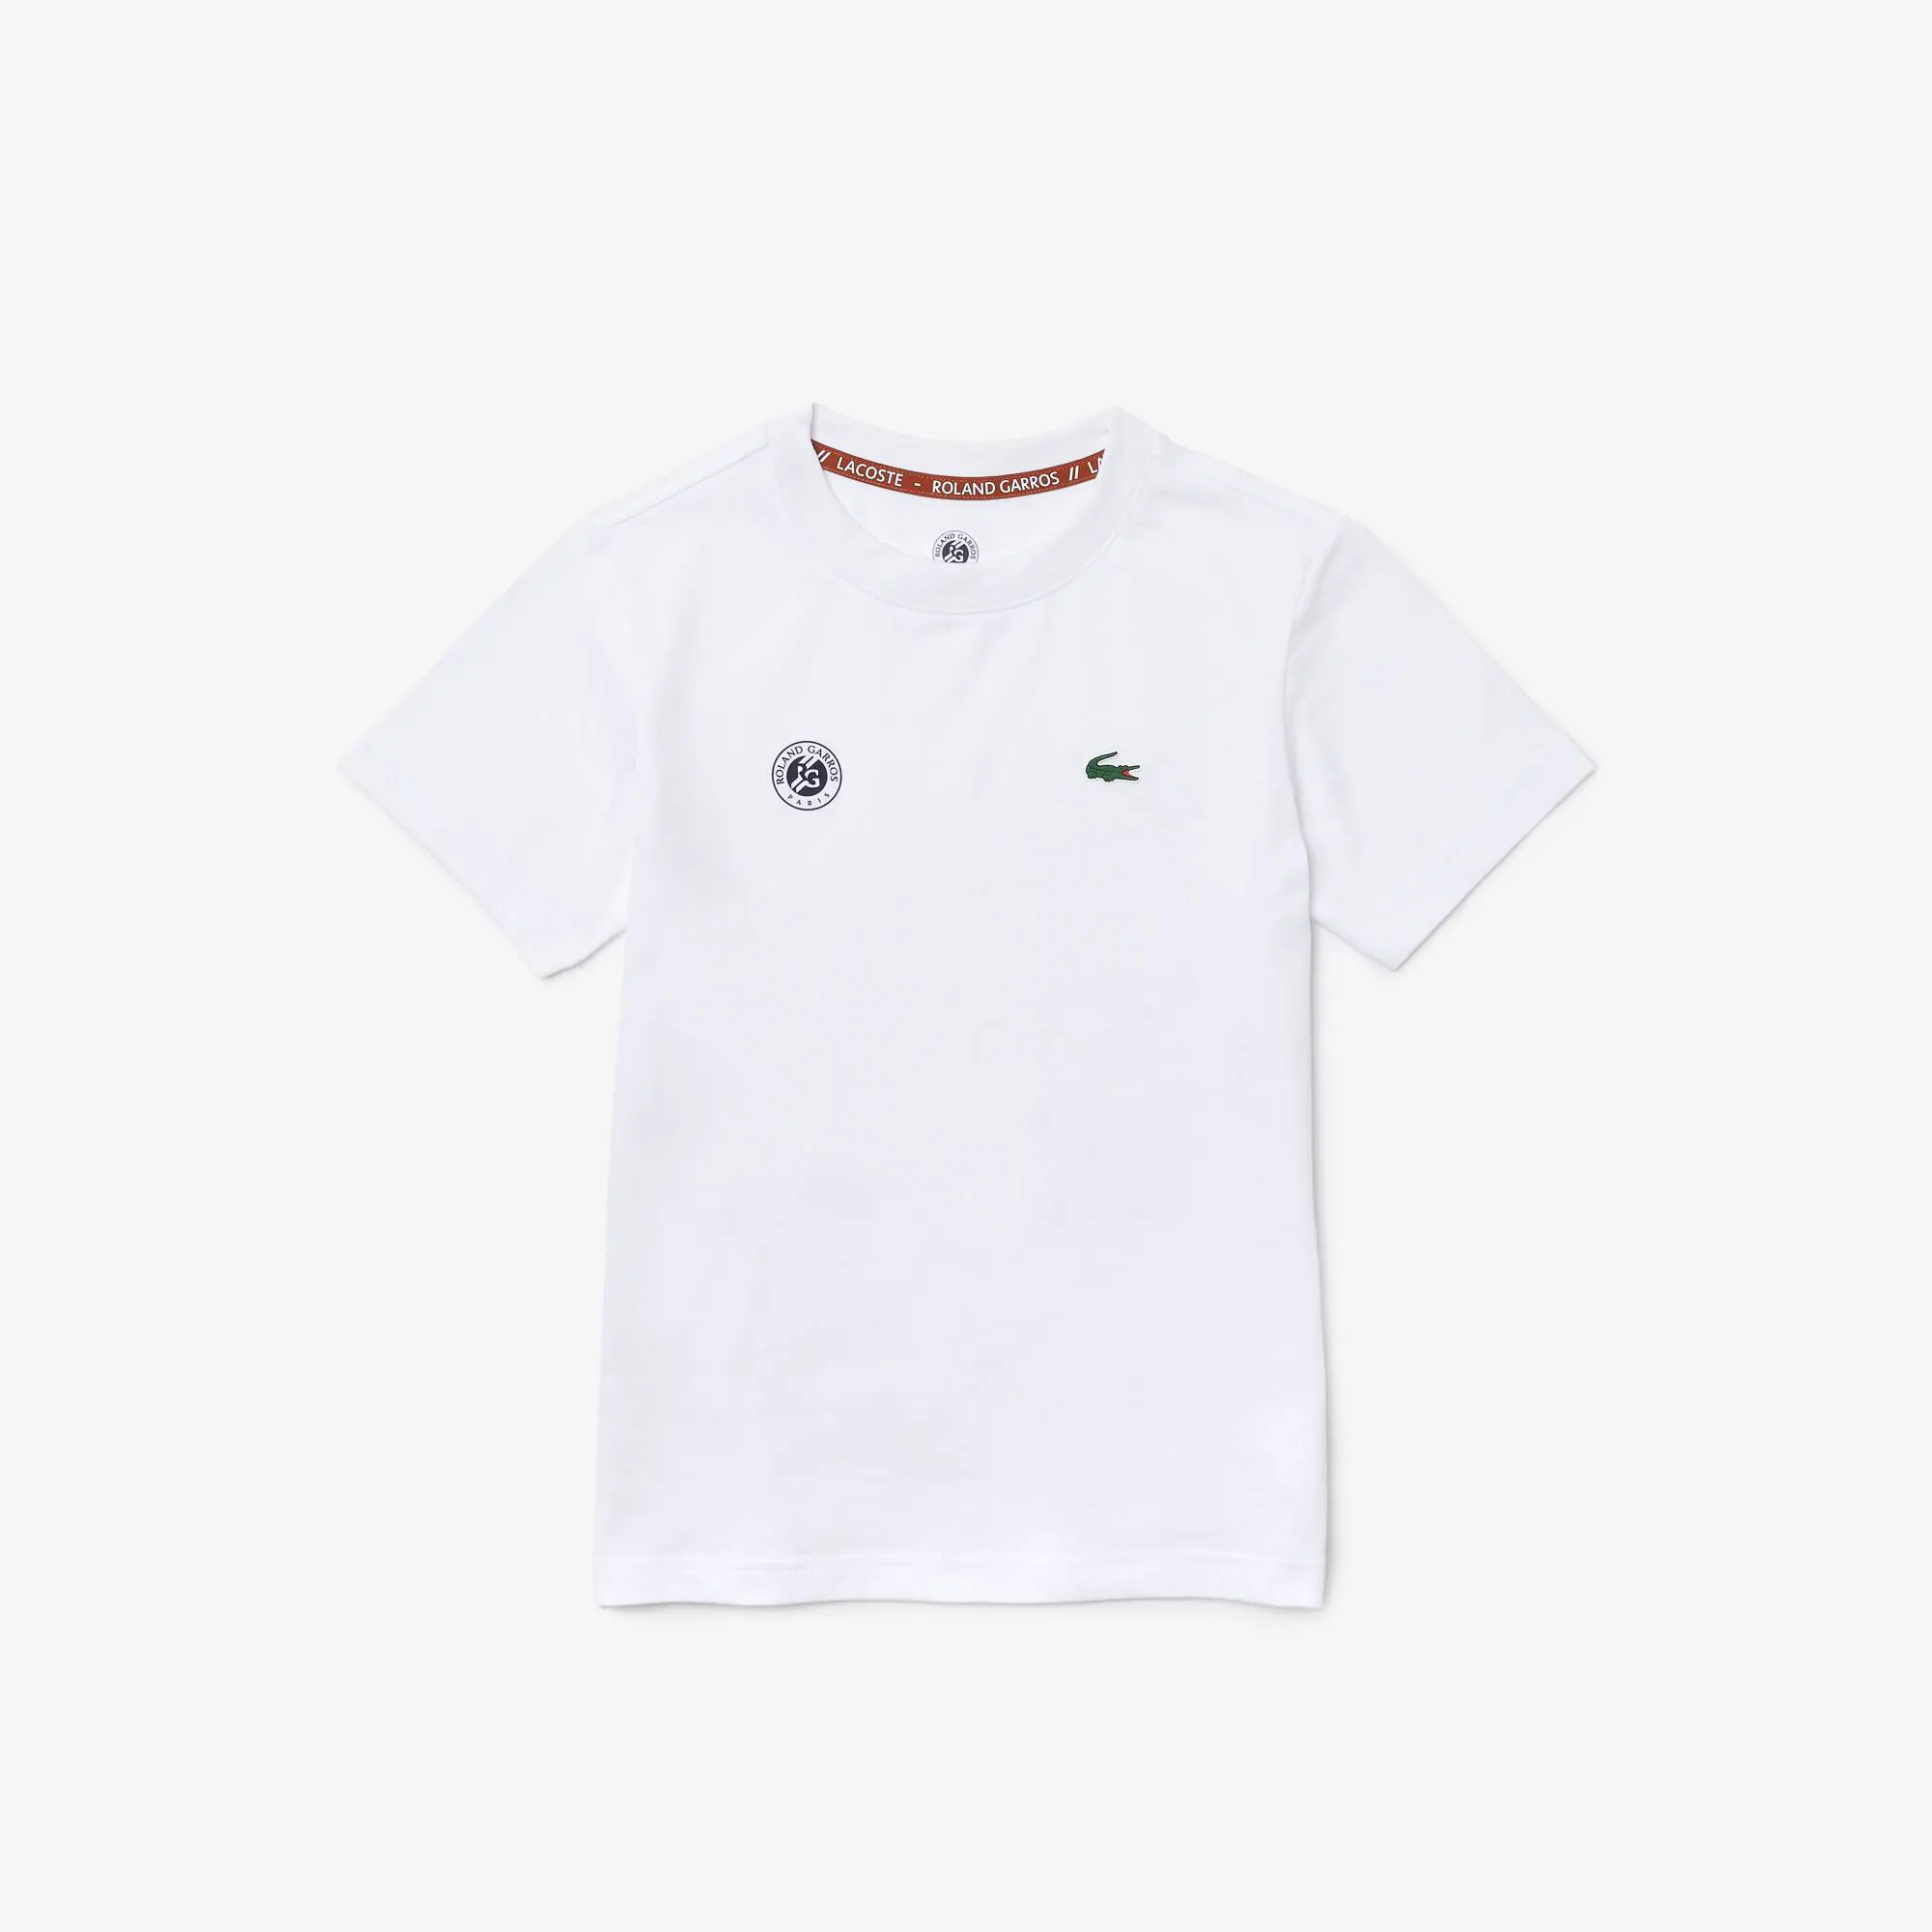 Lacoste Camiseta de niño Roland Garros Edition Performance en tejido de punto ultra-dry. 2